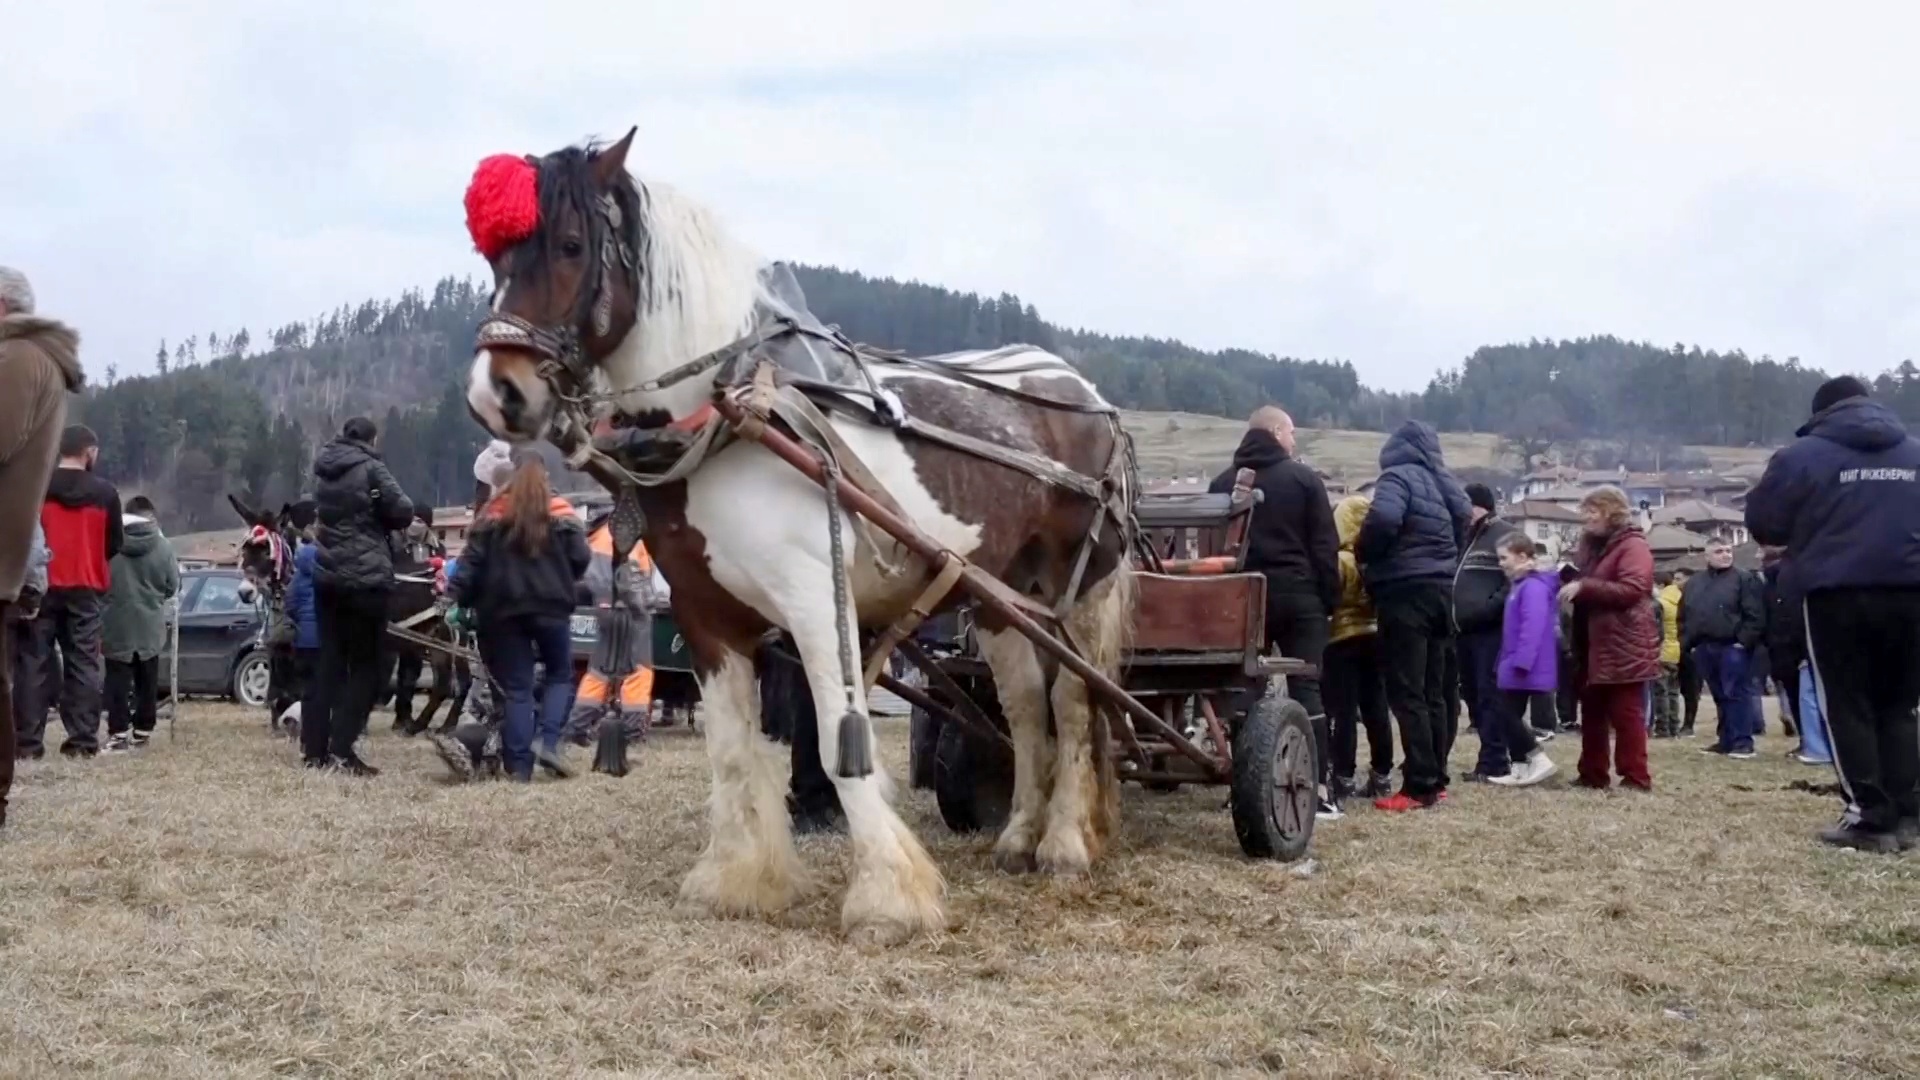 В болгарском городке устроили праздник для лошадей